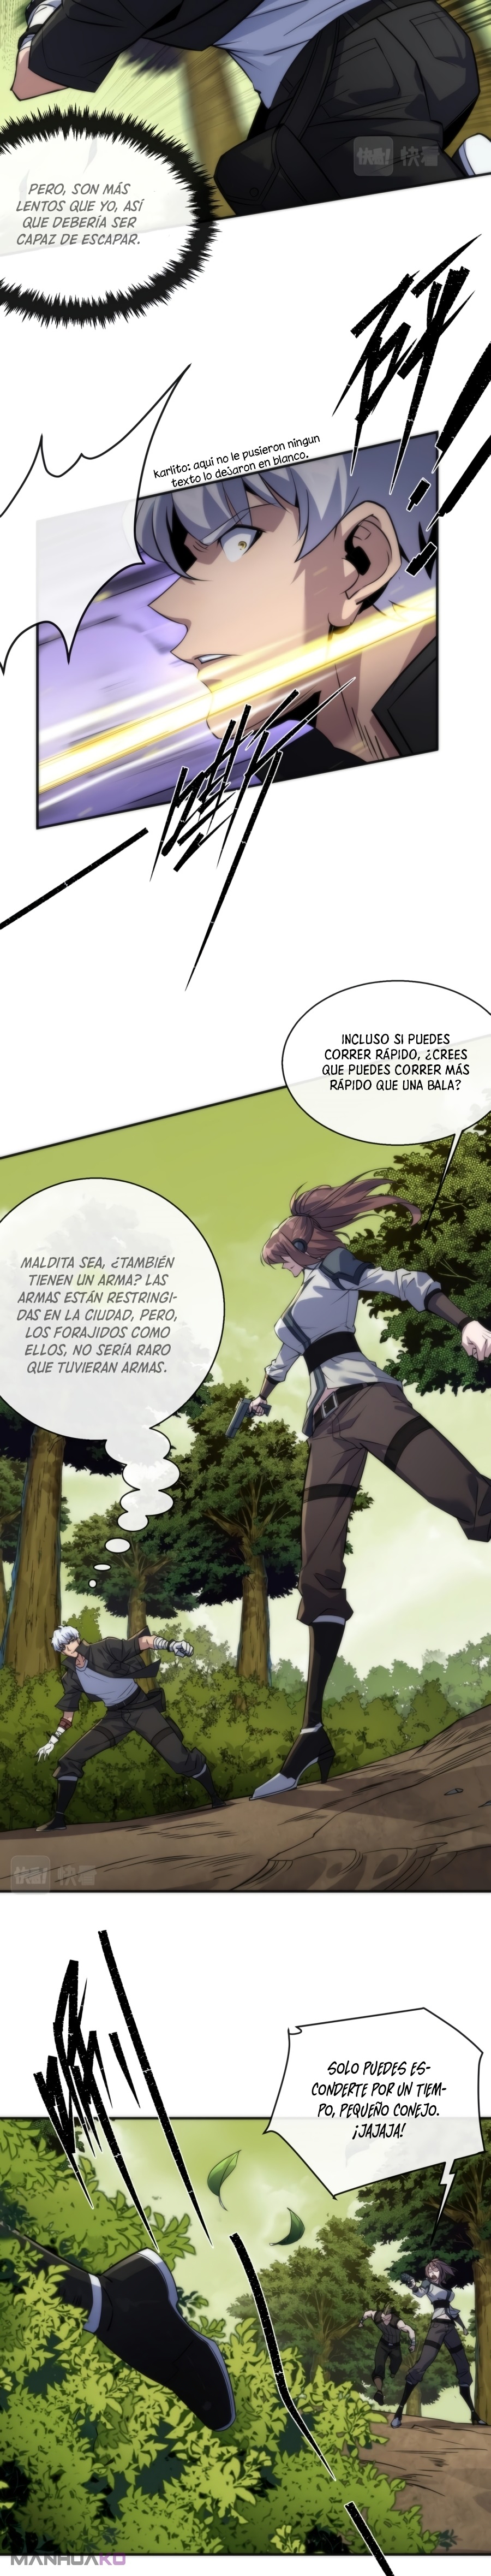 Manga Rey de las runas Chapter 19 image number 18